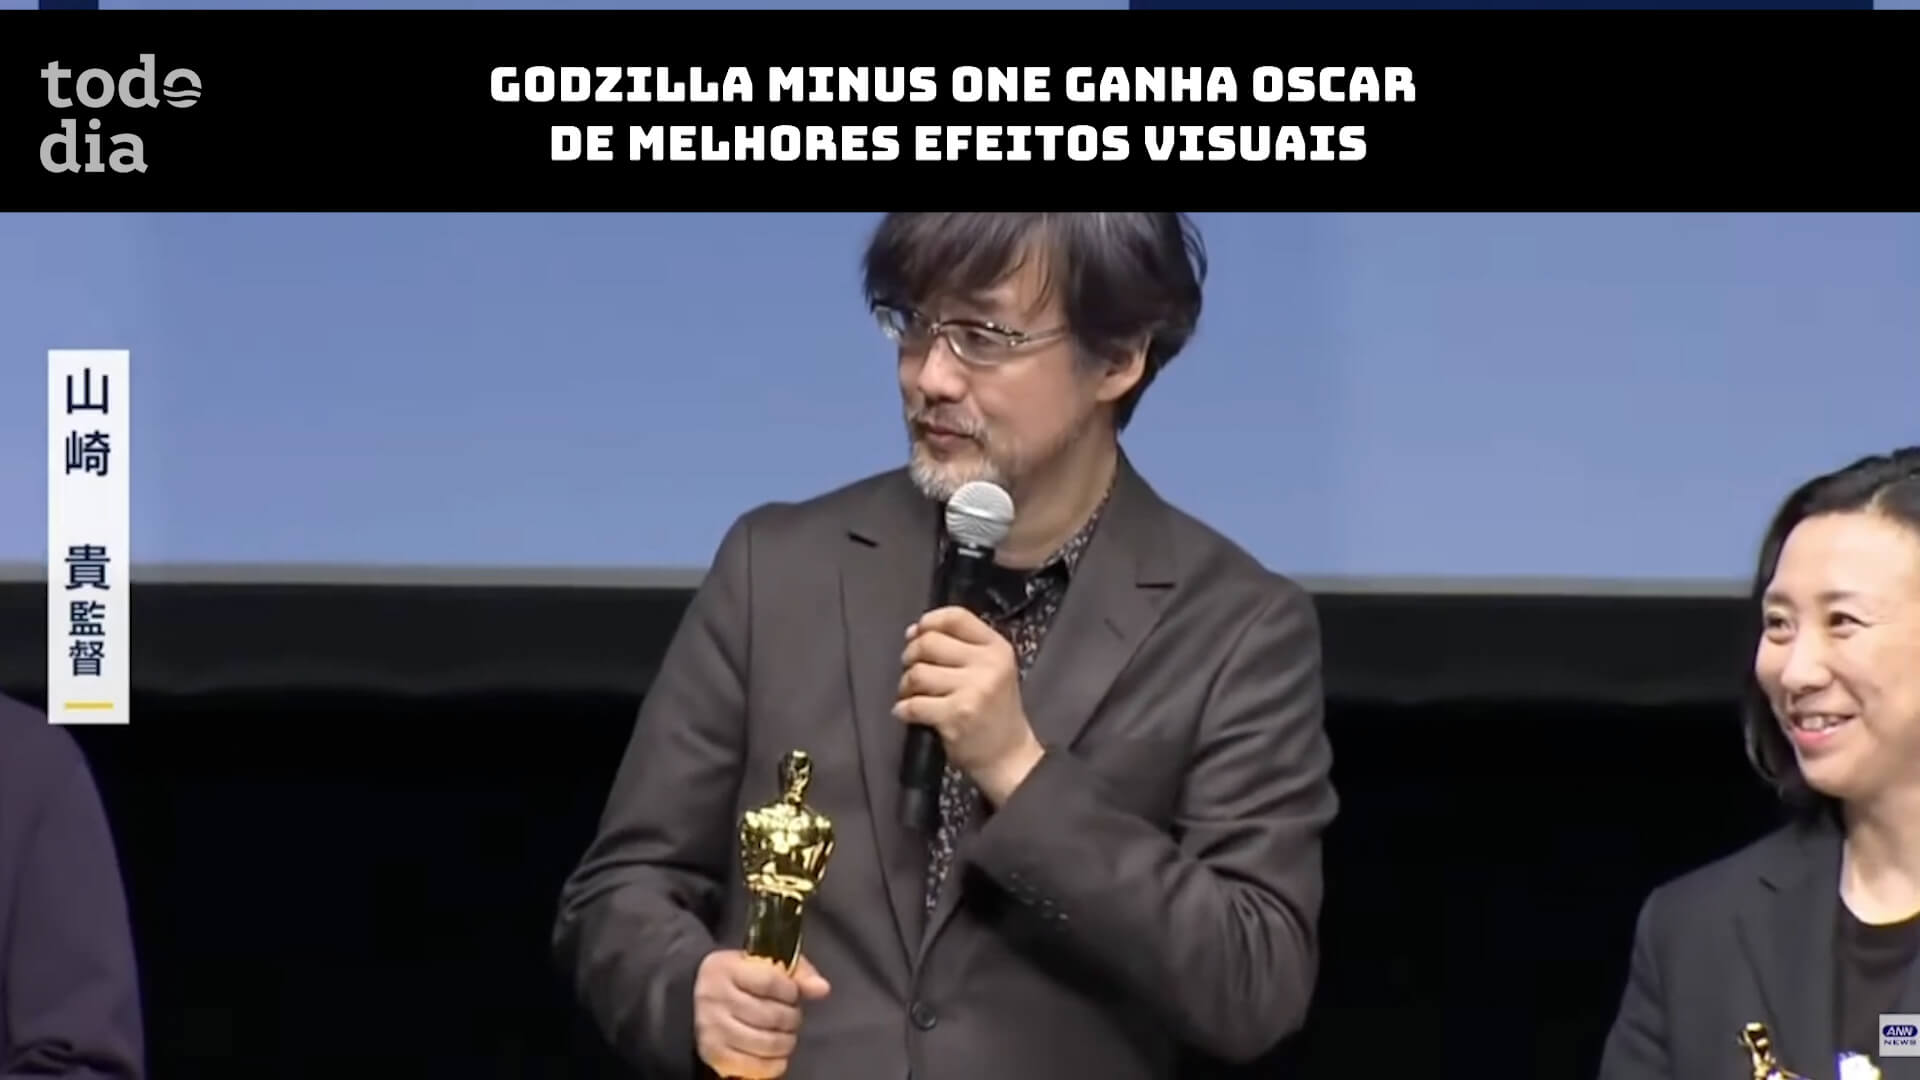 Godzilla Minus One ganha Oscar de Melhores Efeitos Visuais